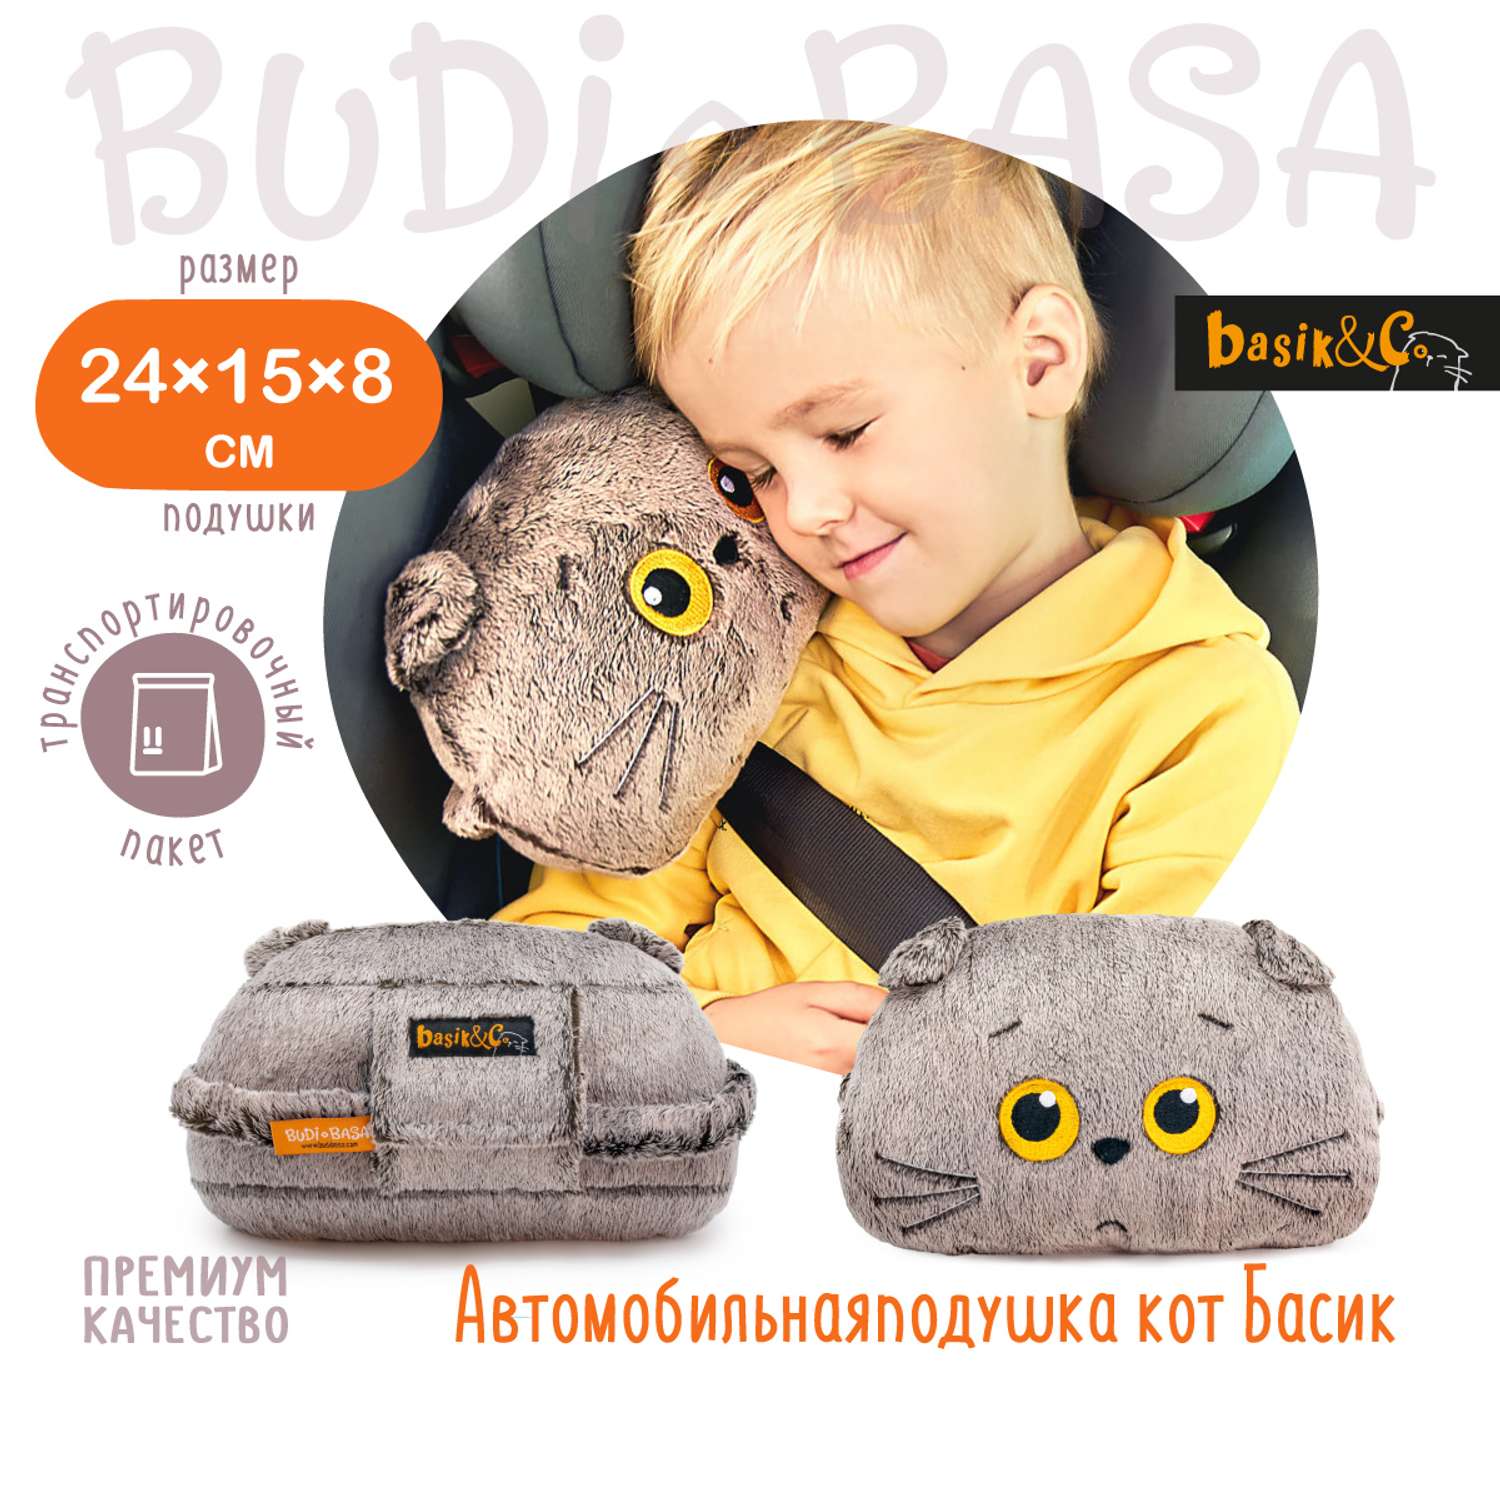 Мягкая игрушка BUDI BASA Автомобильная подушка Кот Басик 15 см Kp24-258 - фото 2